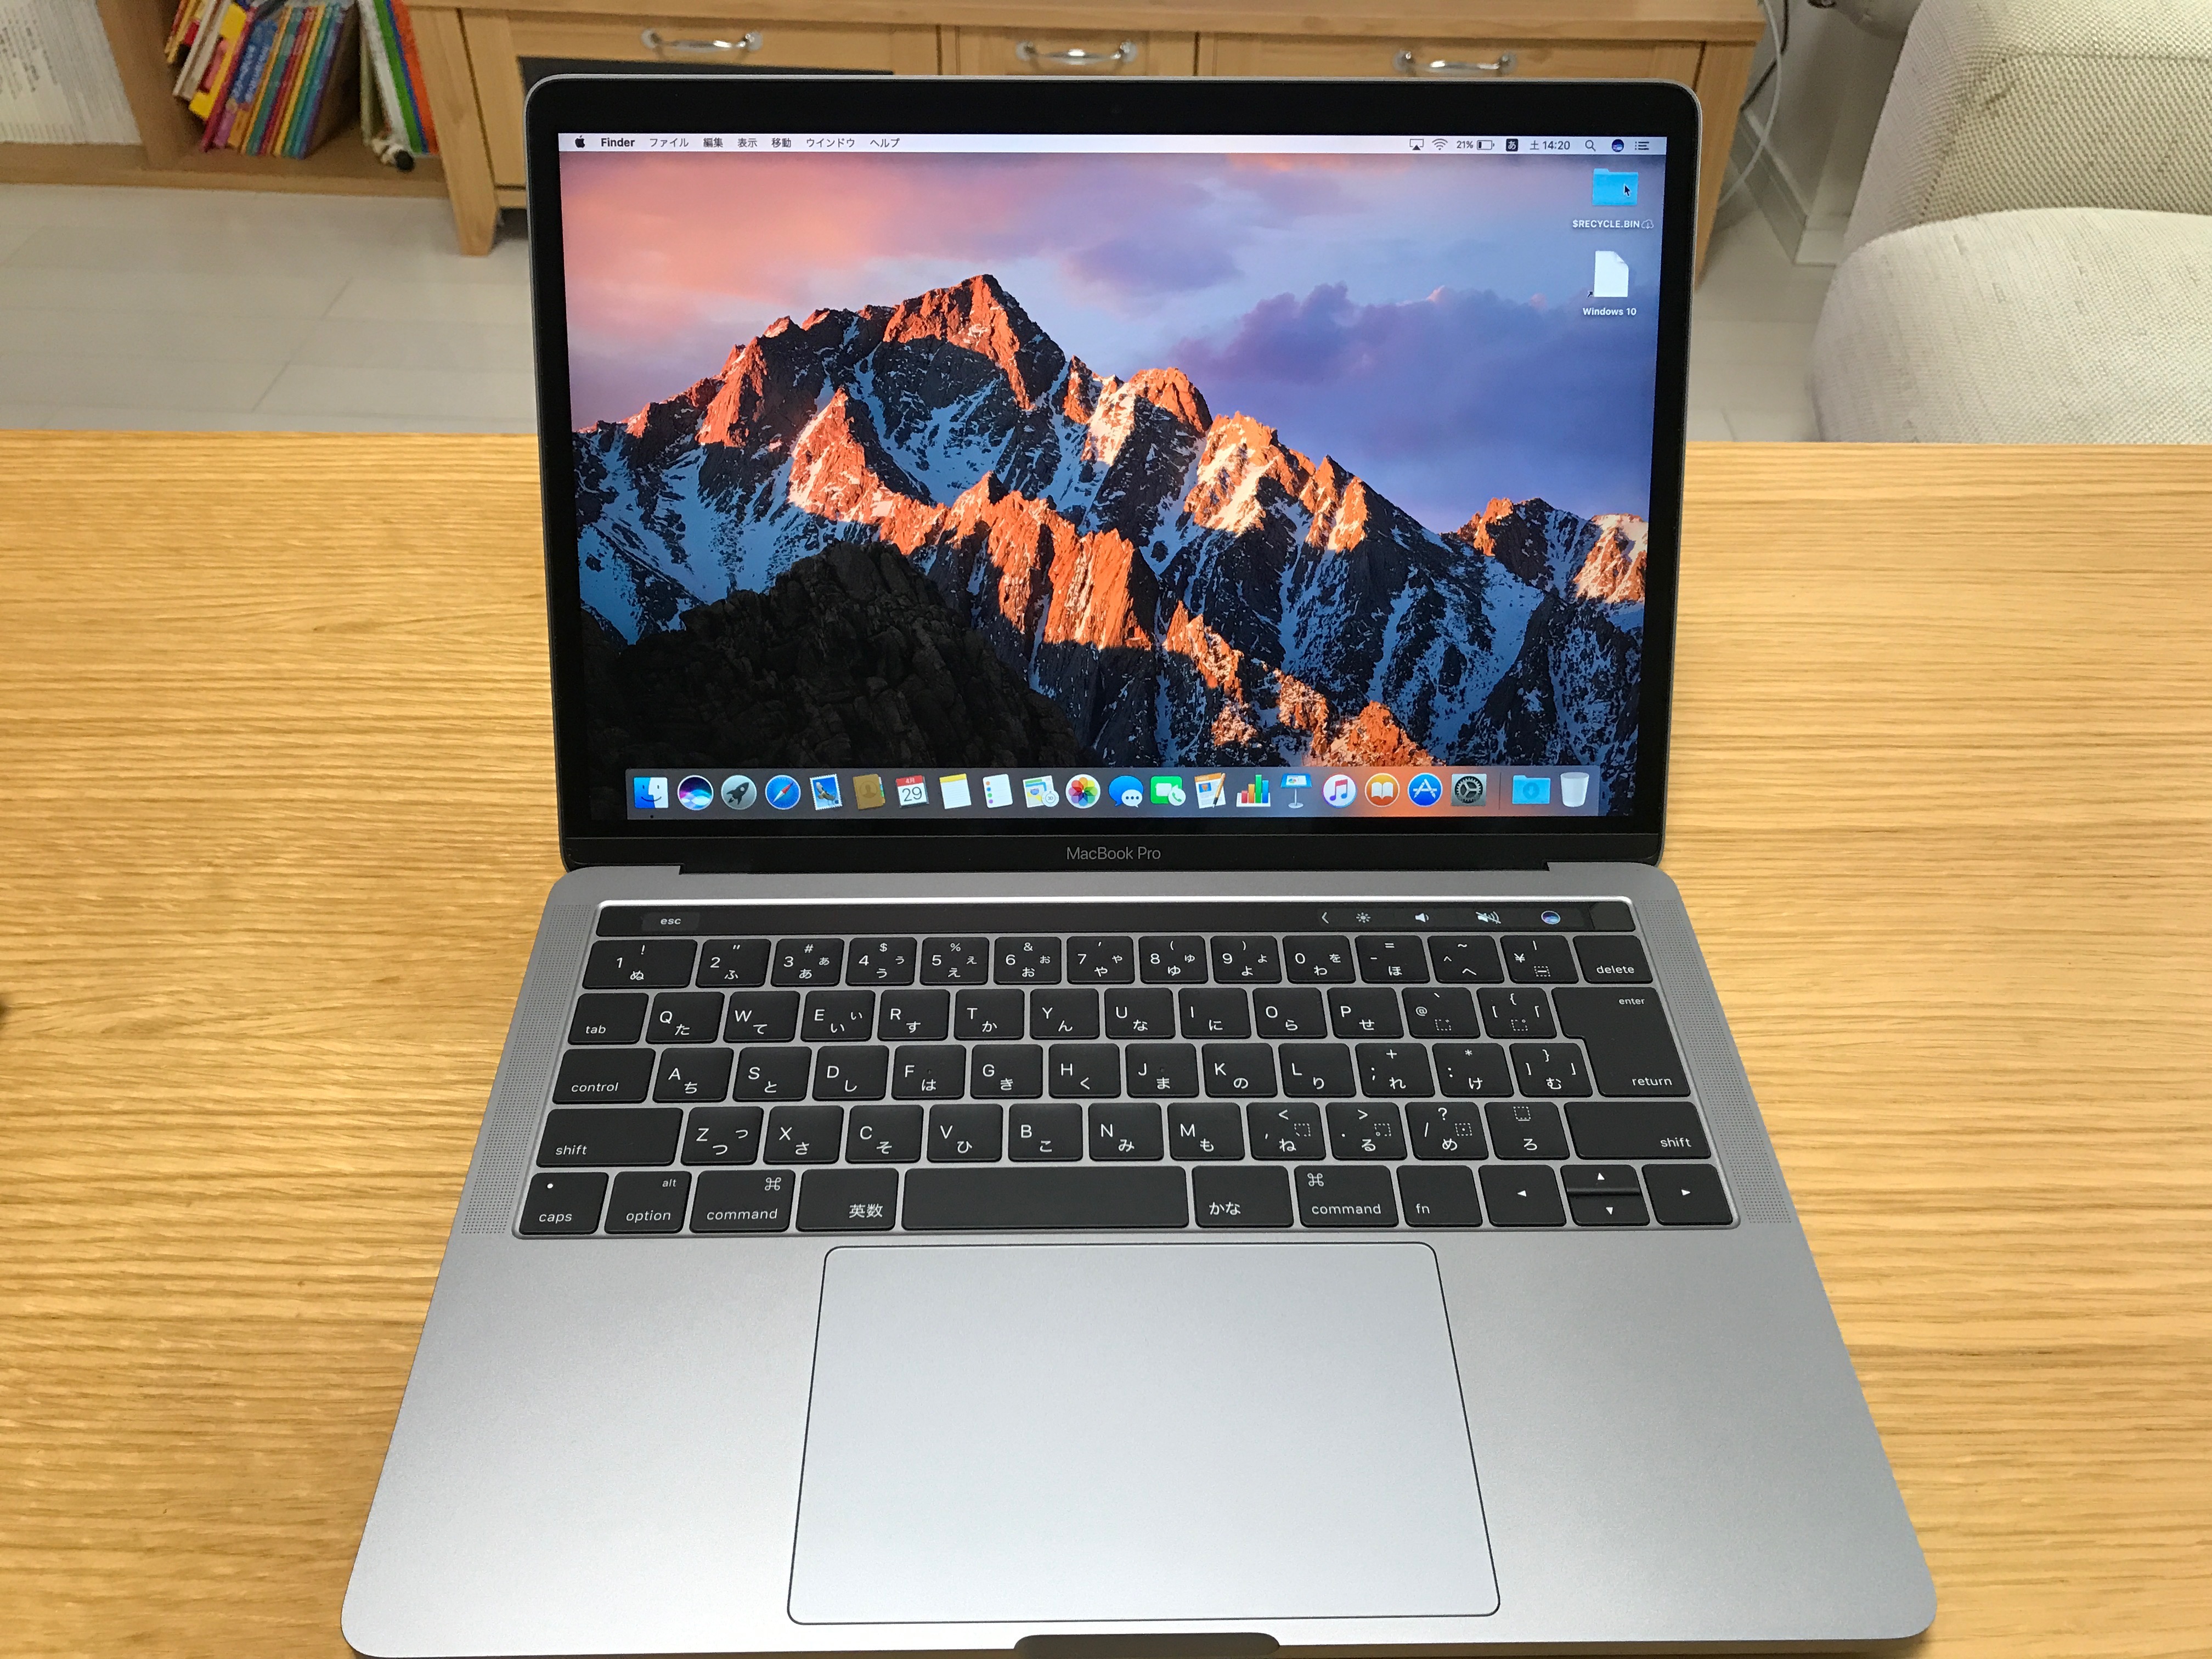 13インチ型MacBook Pro 2016 を購入しました